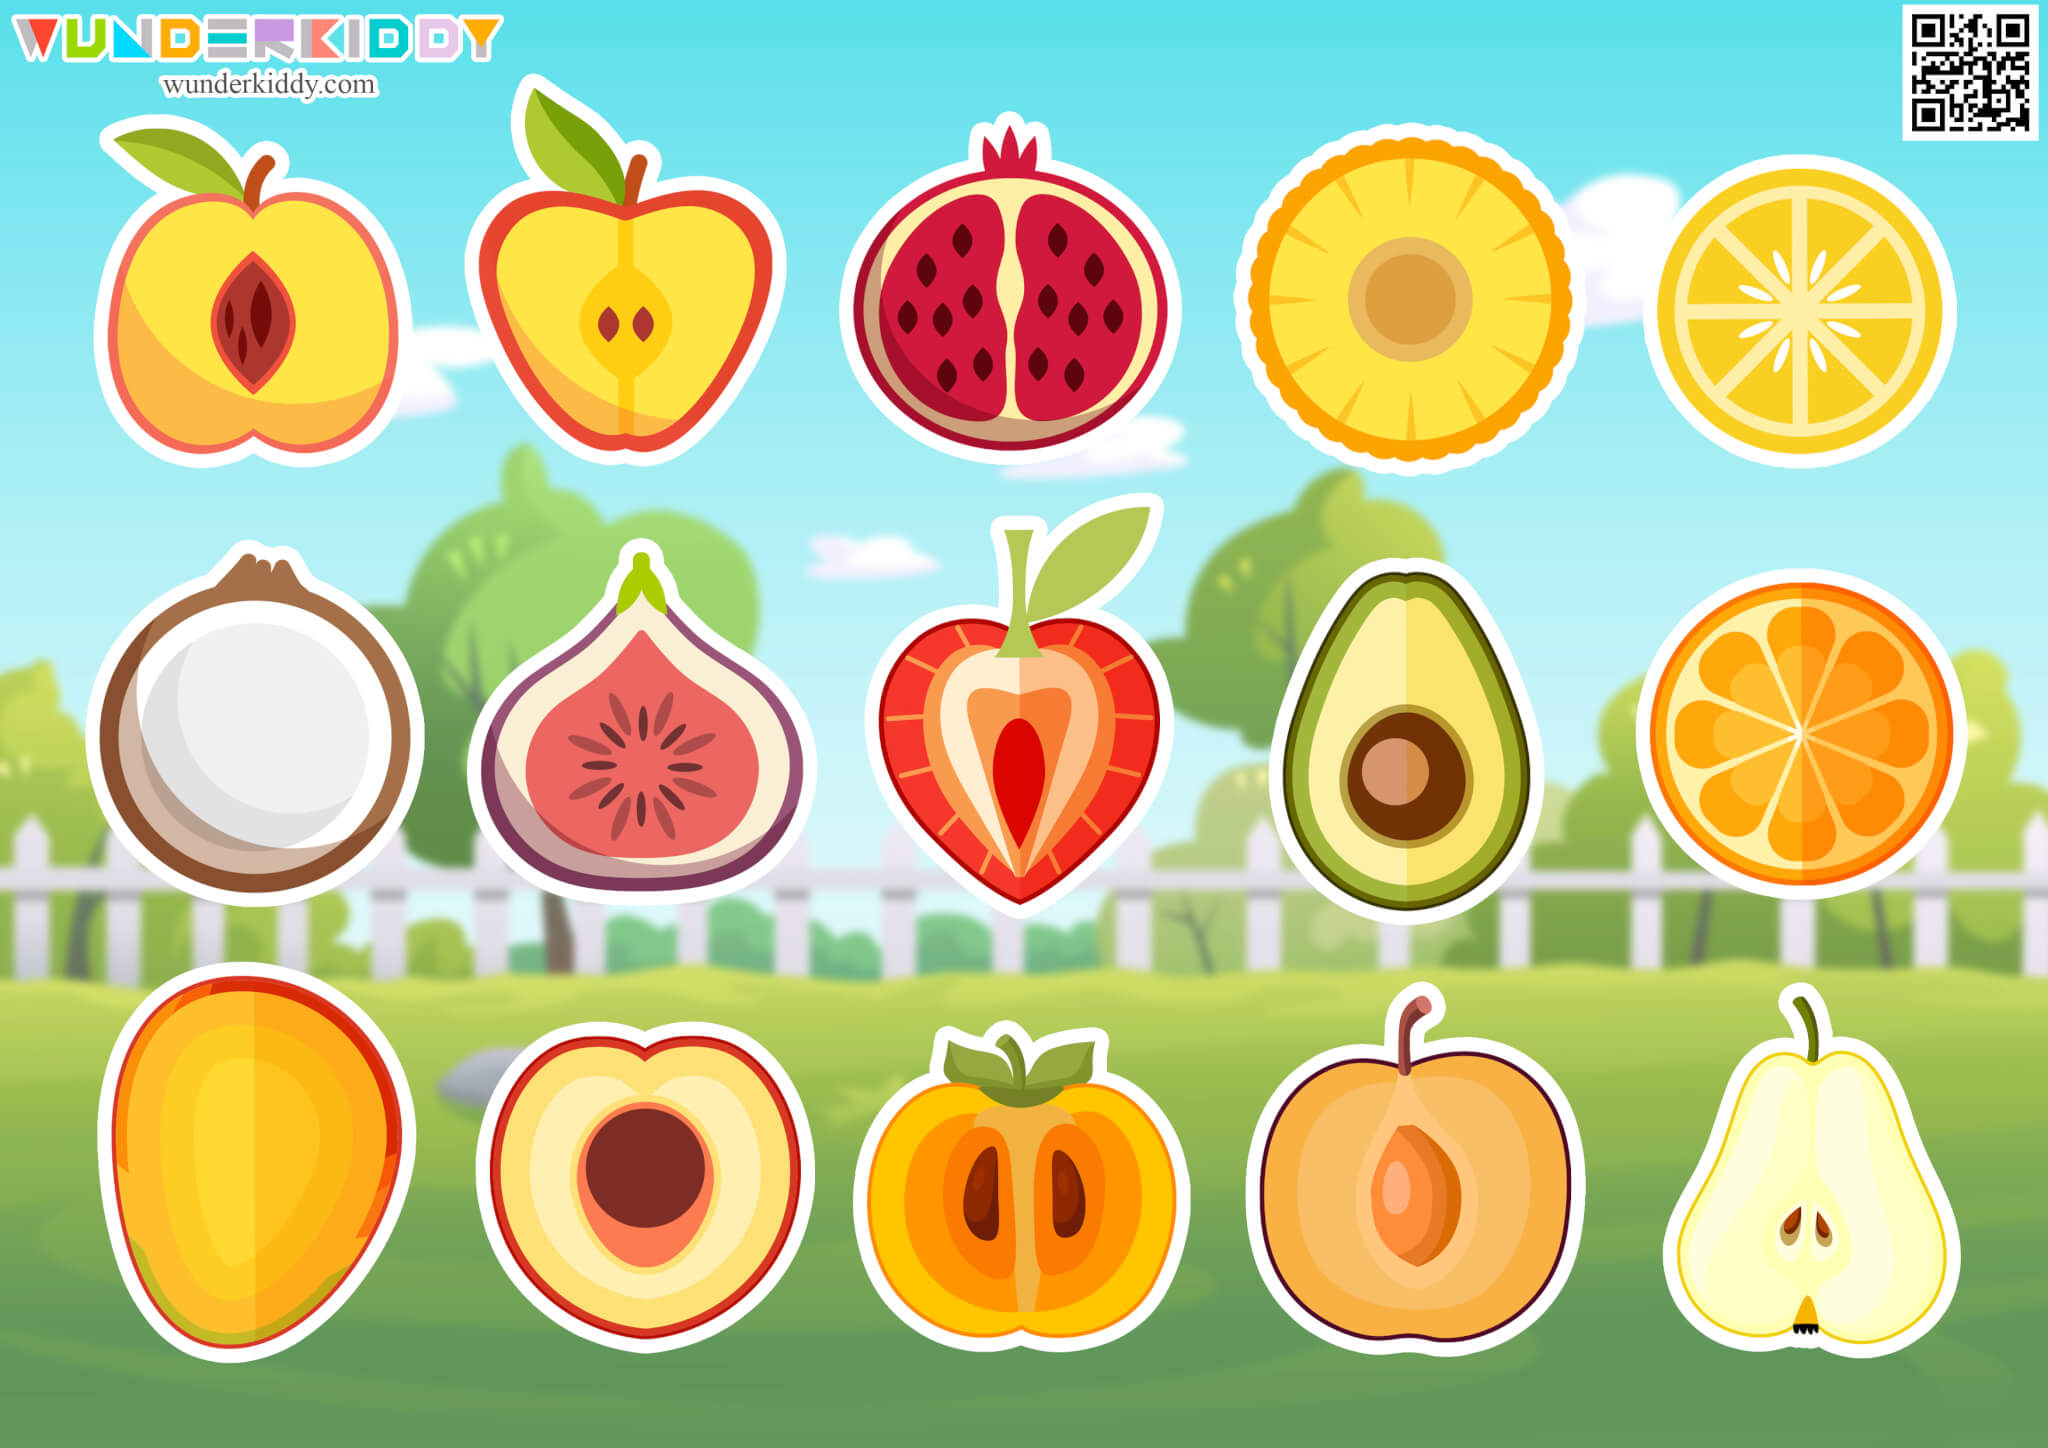 Fruit Slices File Folder Game for Kids - Image 2